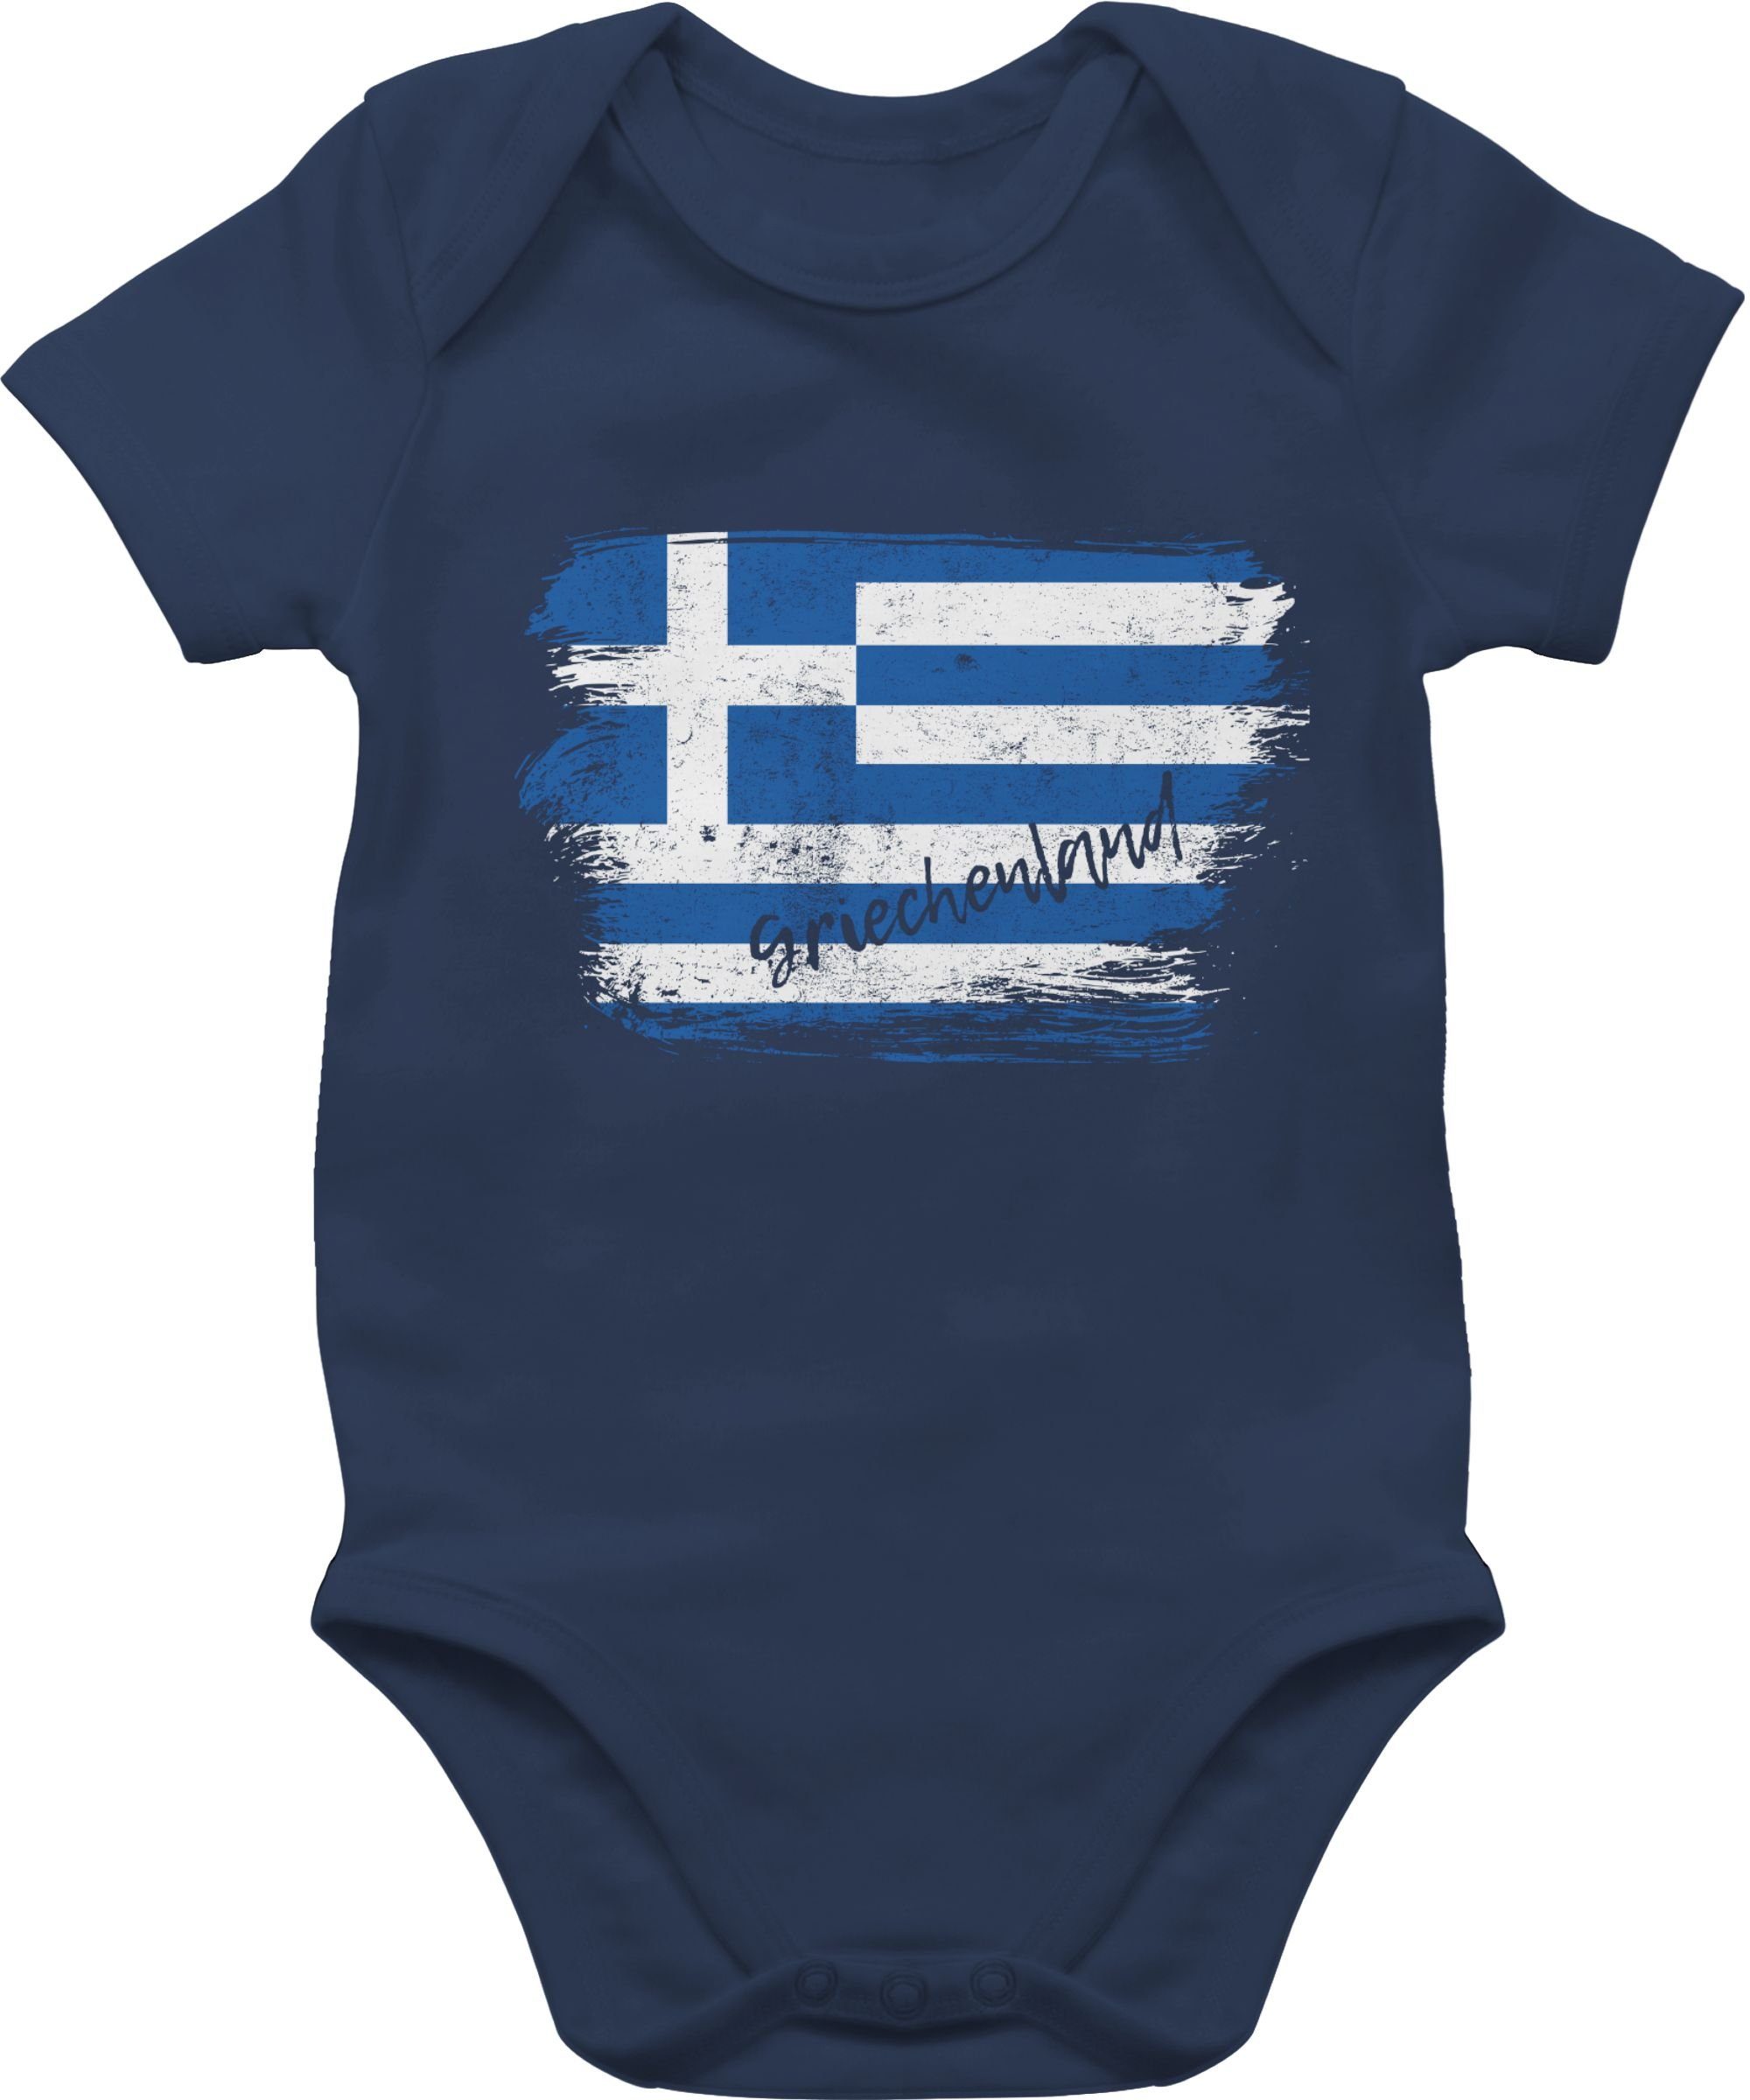 Shirtracer Shirtbody Griechenland Vintage Baby Länder Wappen 2 Navy Blau